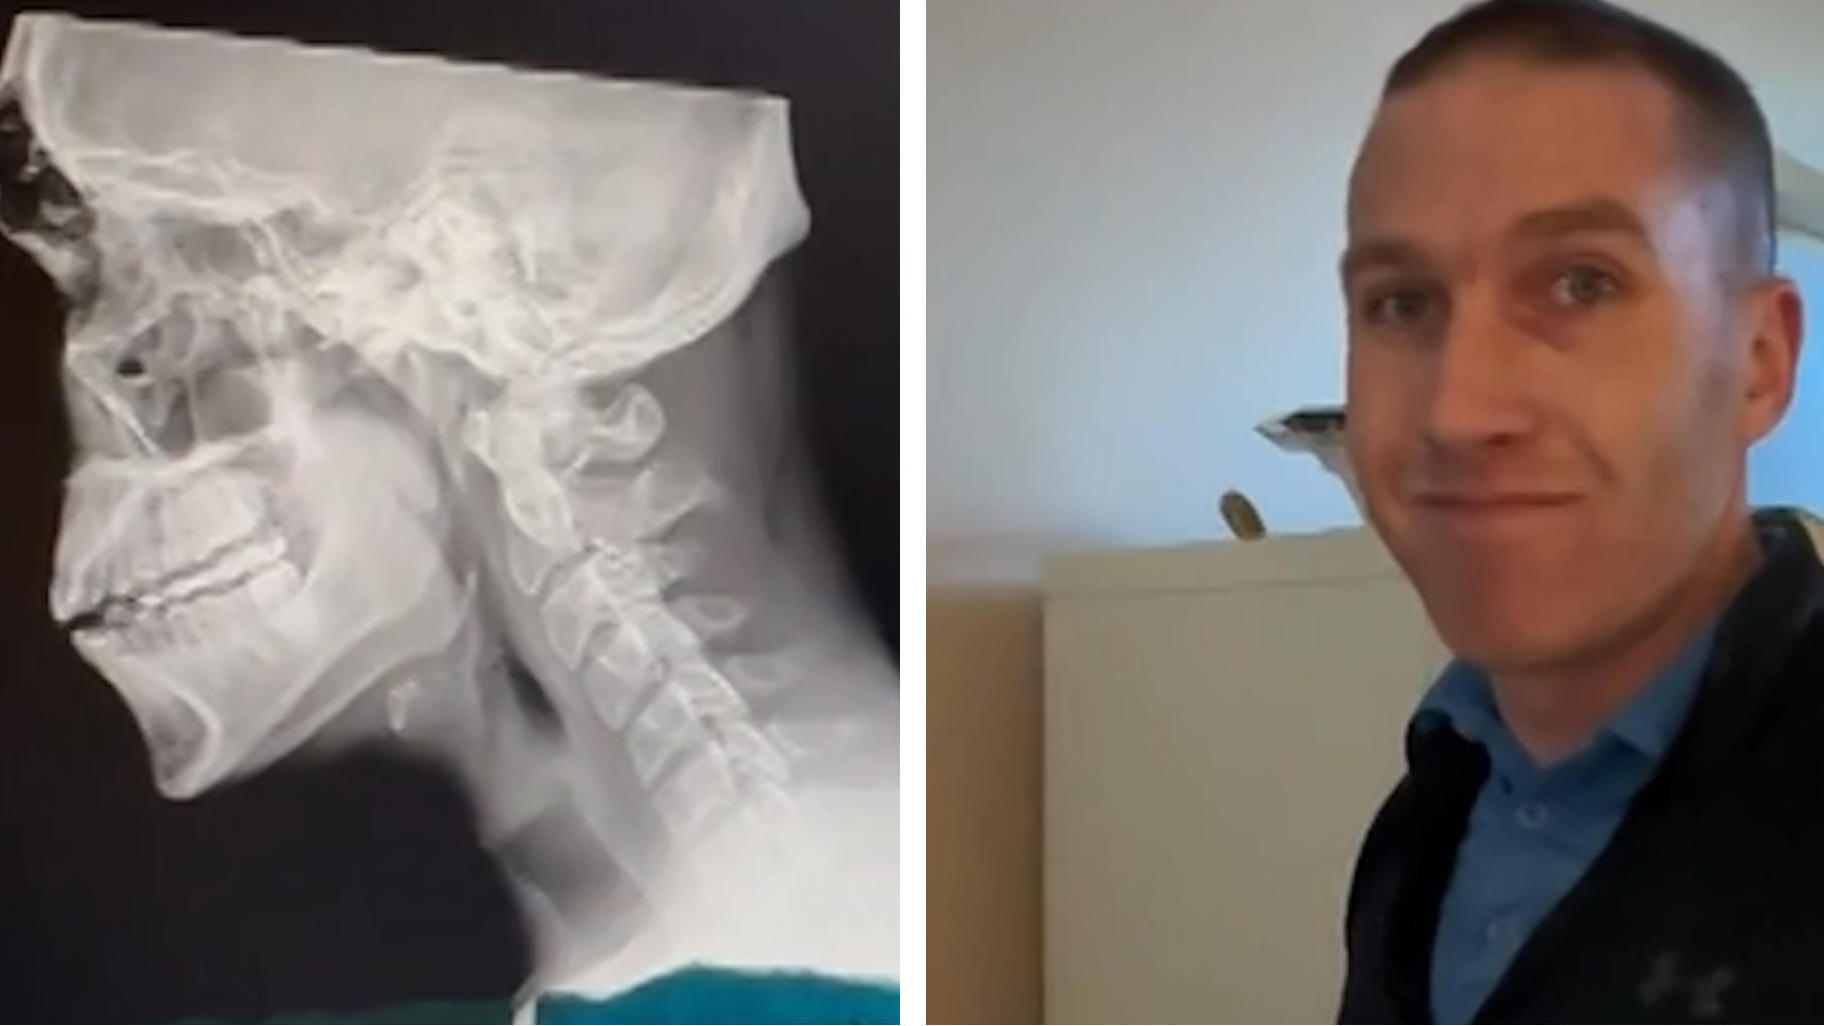 Arzt schockt mit Röntgenbildern Immer mehr Buckel